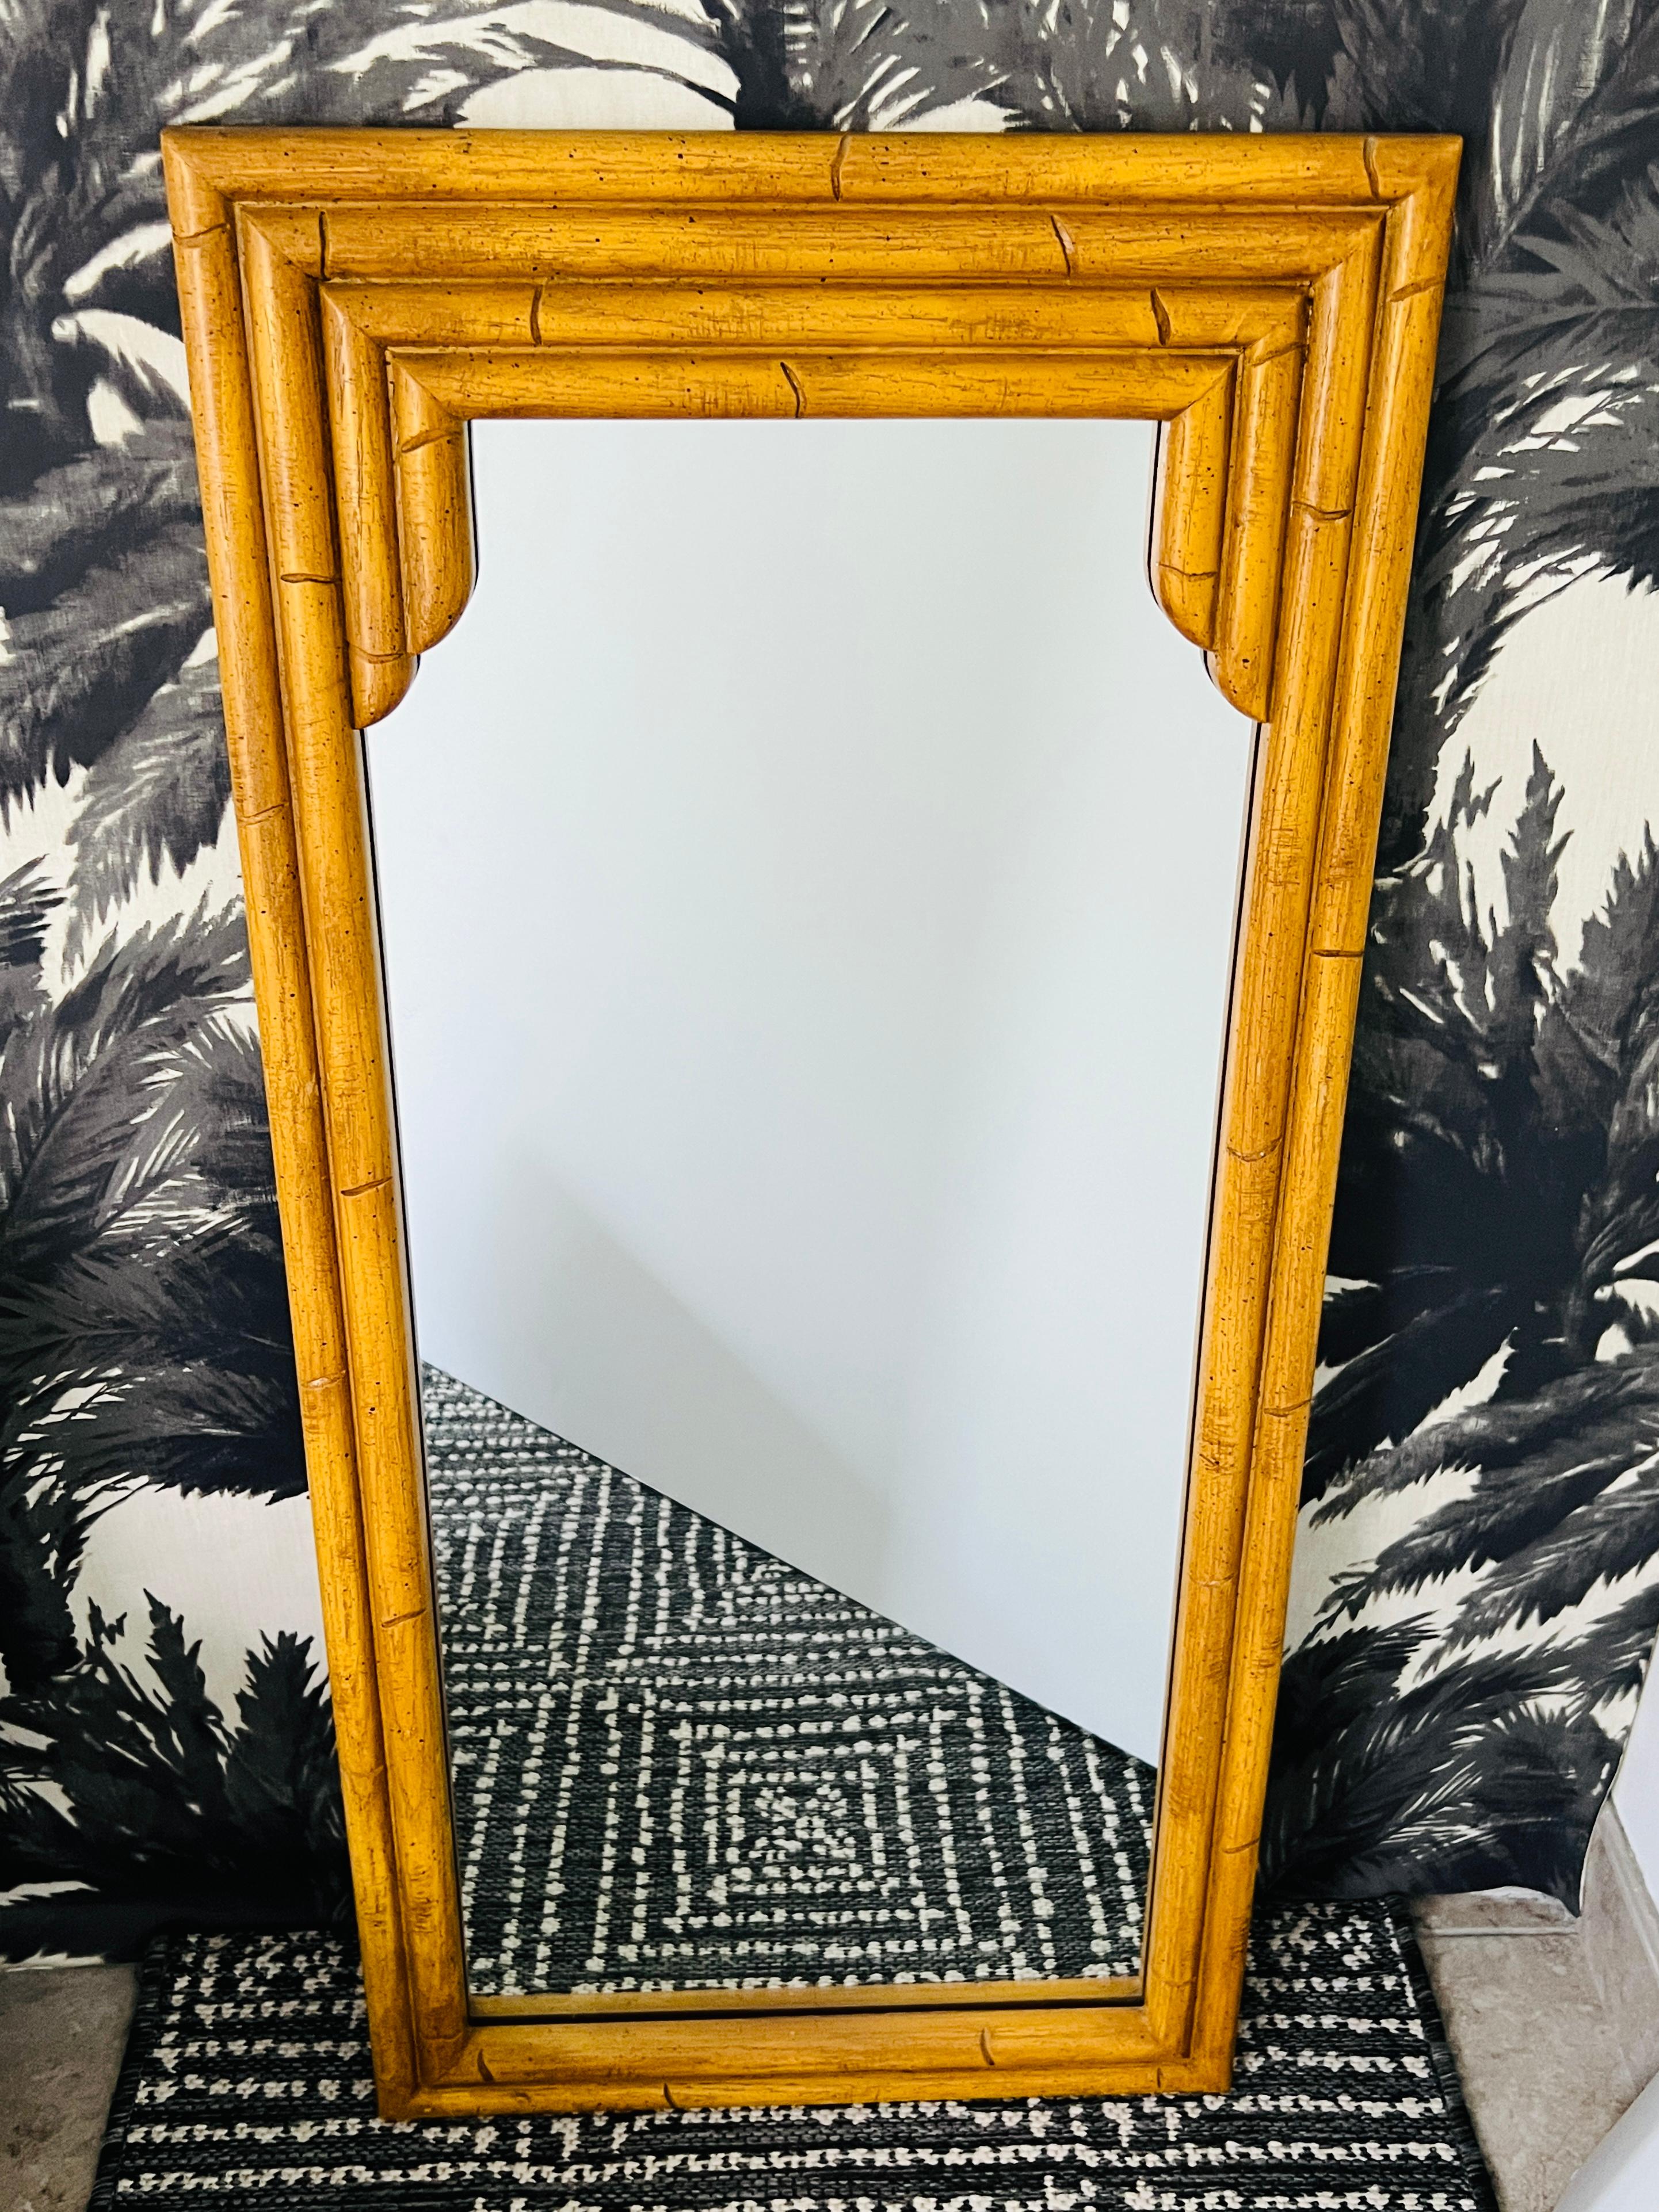 Paire de miroirs en faux bambou de style Hollywood Regency avec cadres en bois sculpté et en résine.
Les miroirs chics ont un design inspiré des pagodes asiatiques avec des cadres étroits.  Avec un motif de bambou sculpté à la main et une finition